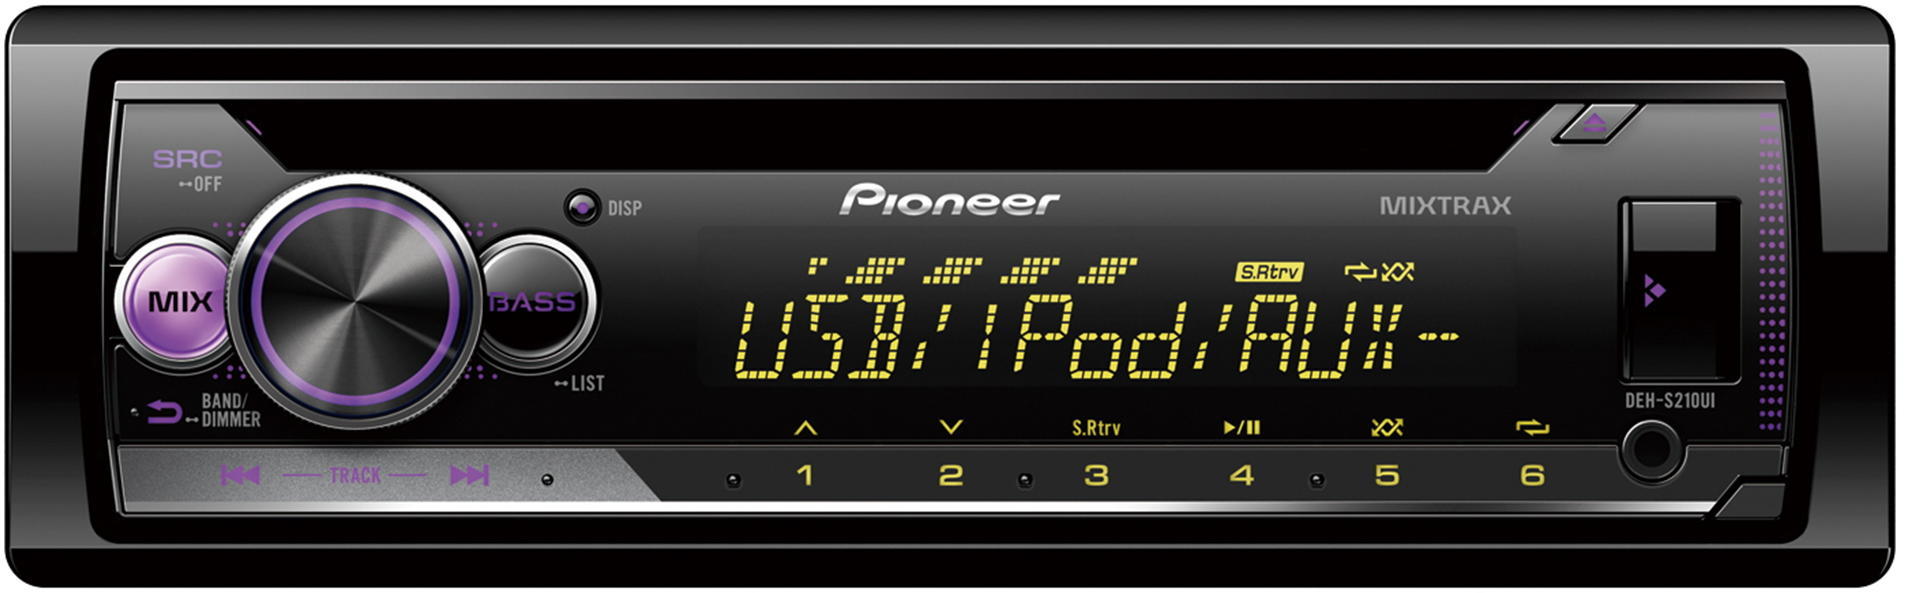 Pioneer Pioneer DEH-S210UI